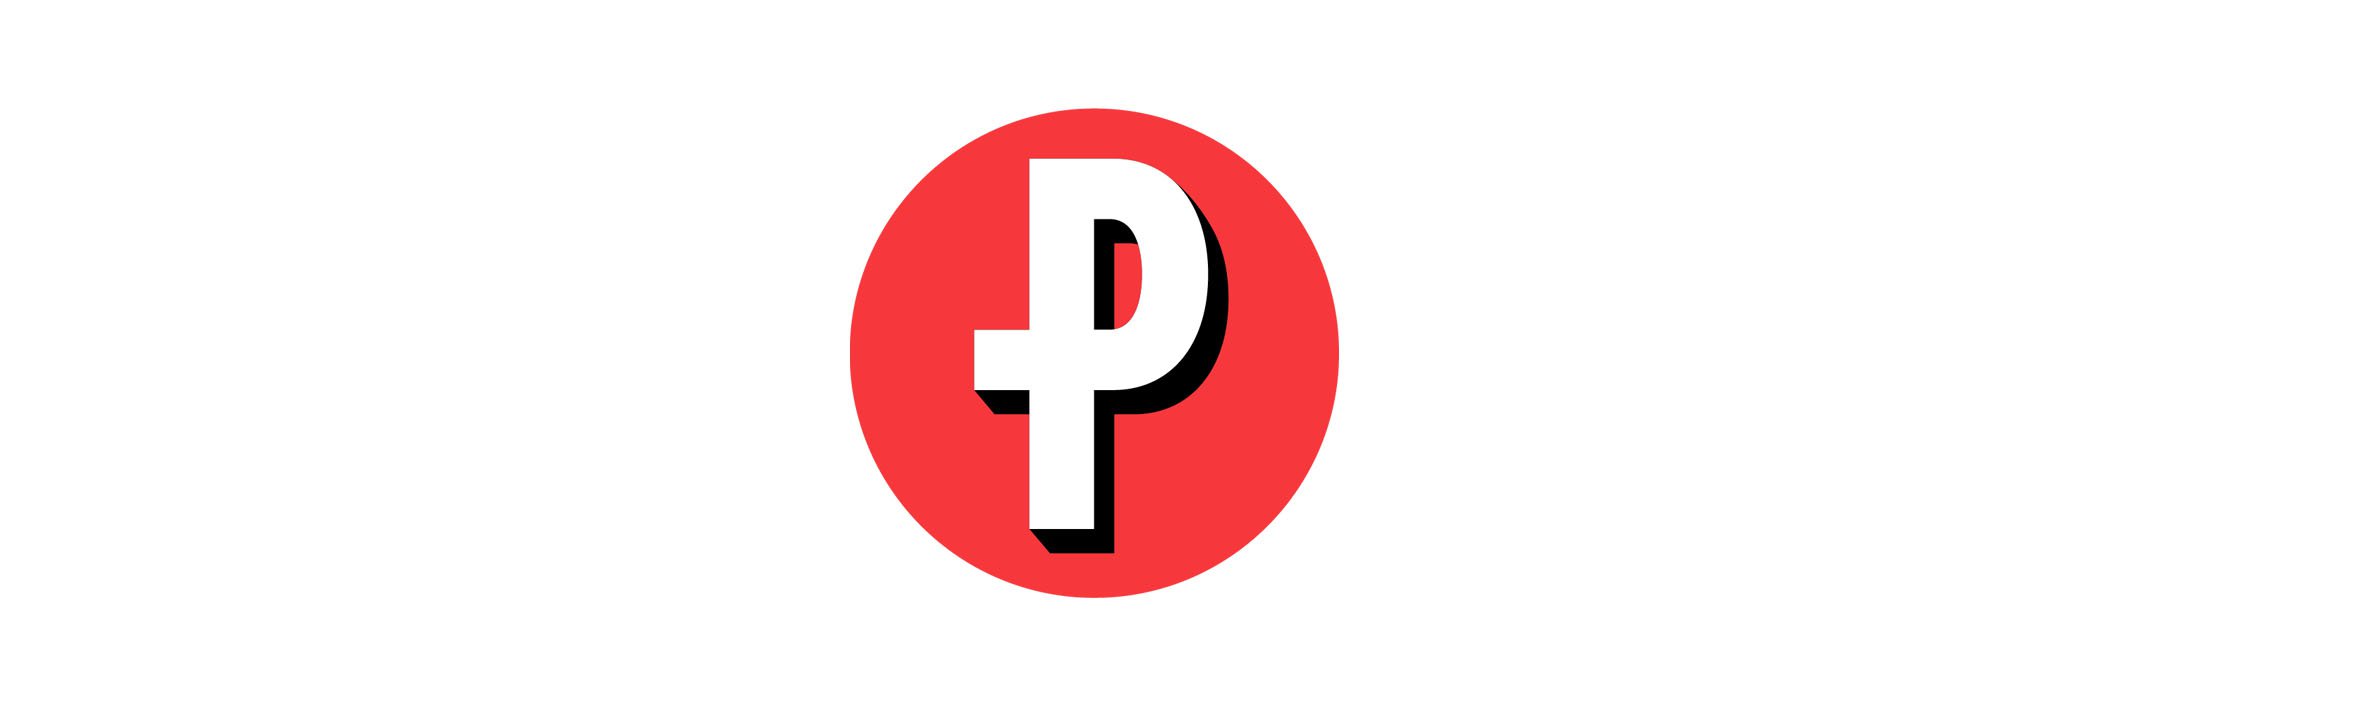 Primetime Logo